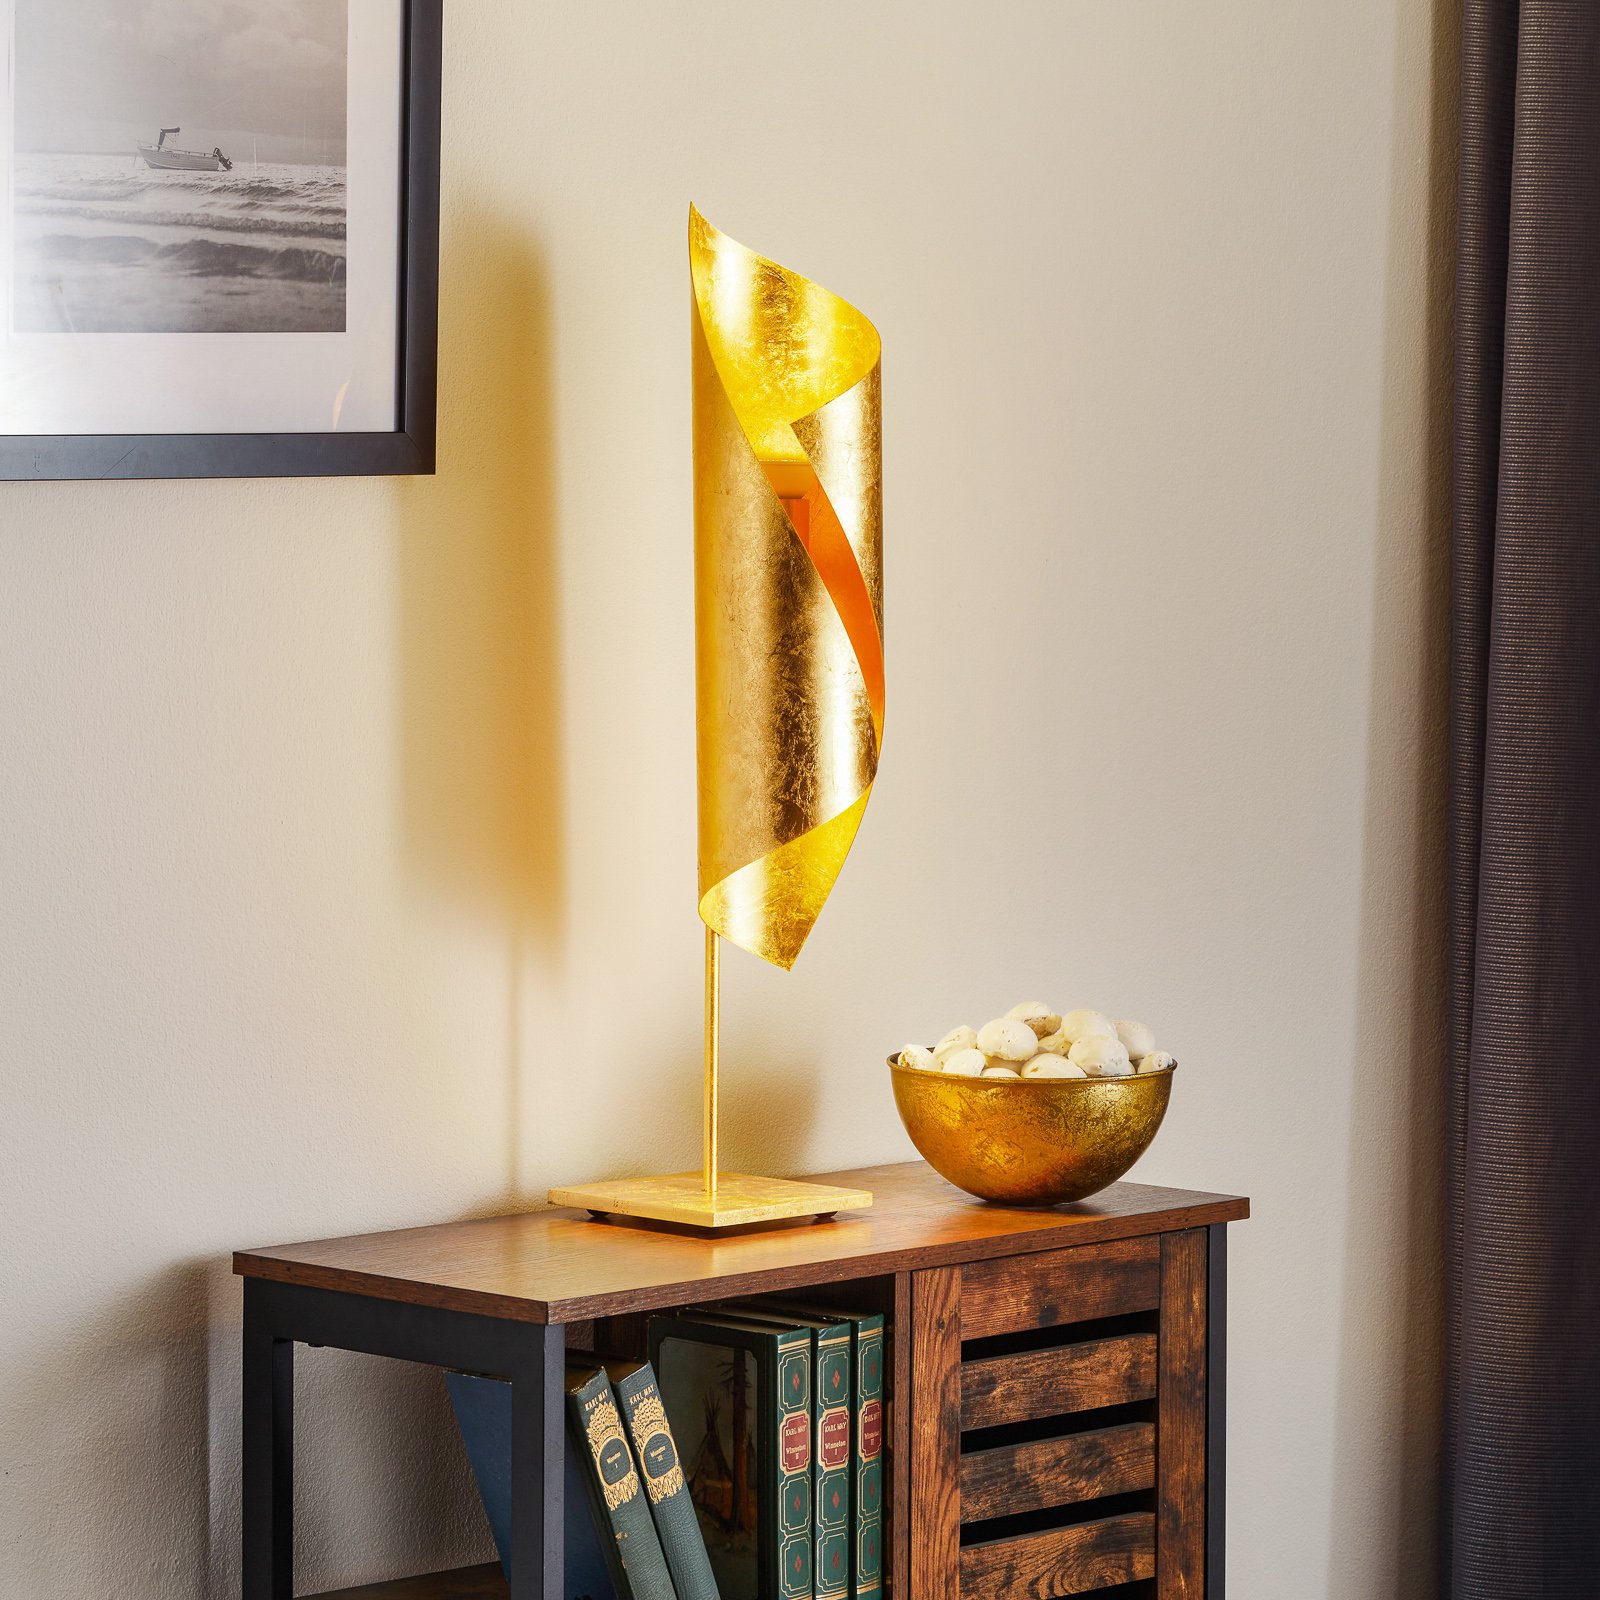 Knikerboker tafellamp Hué bladgoud, 70 cm hoog